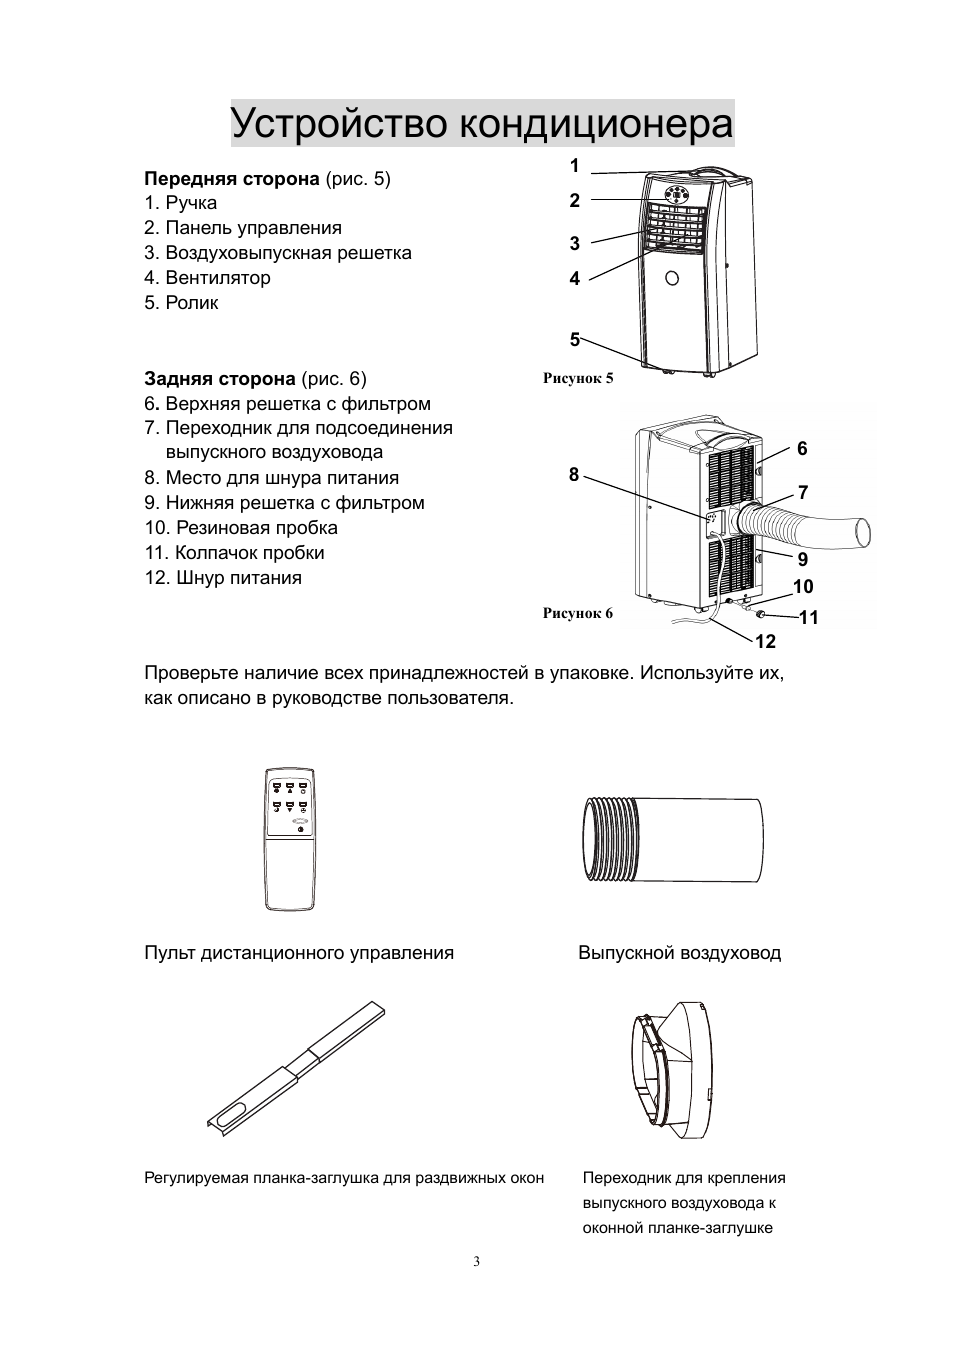 Инструкция к пульту от кондиционера beko: подробно